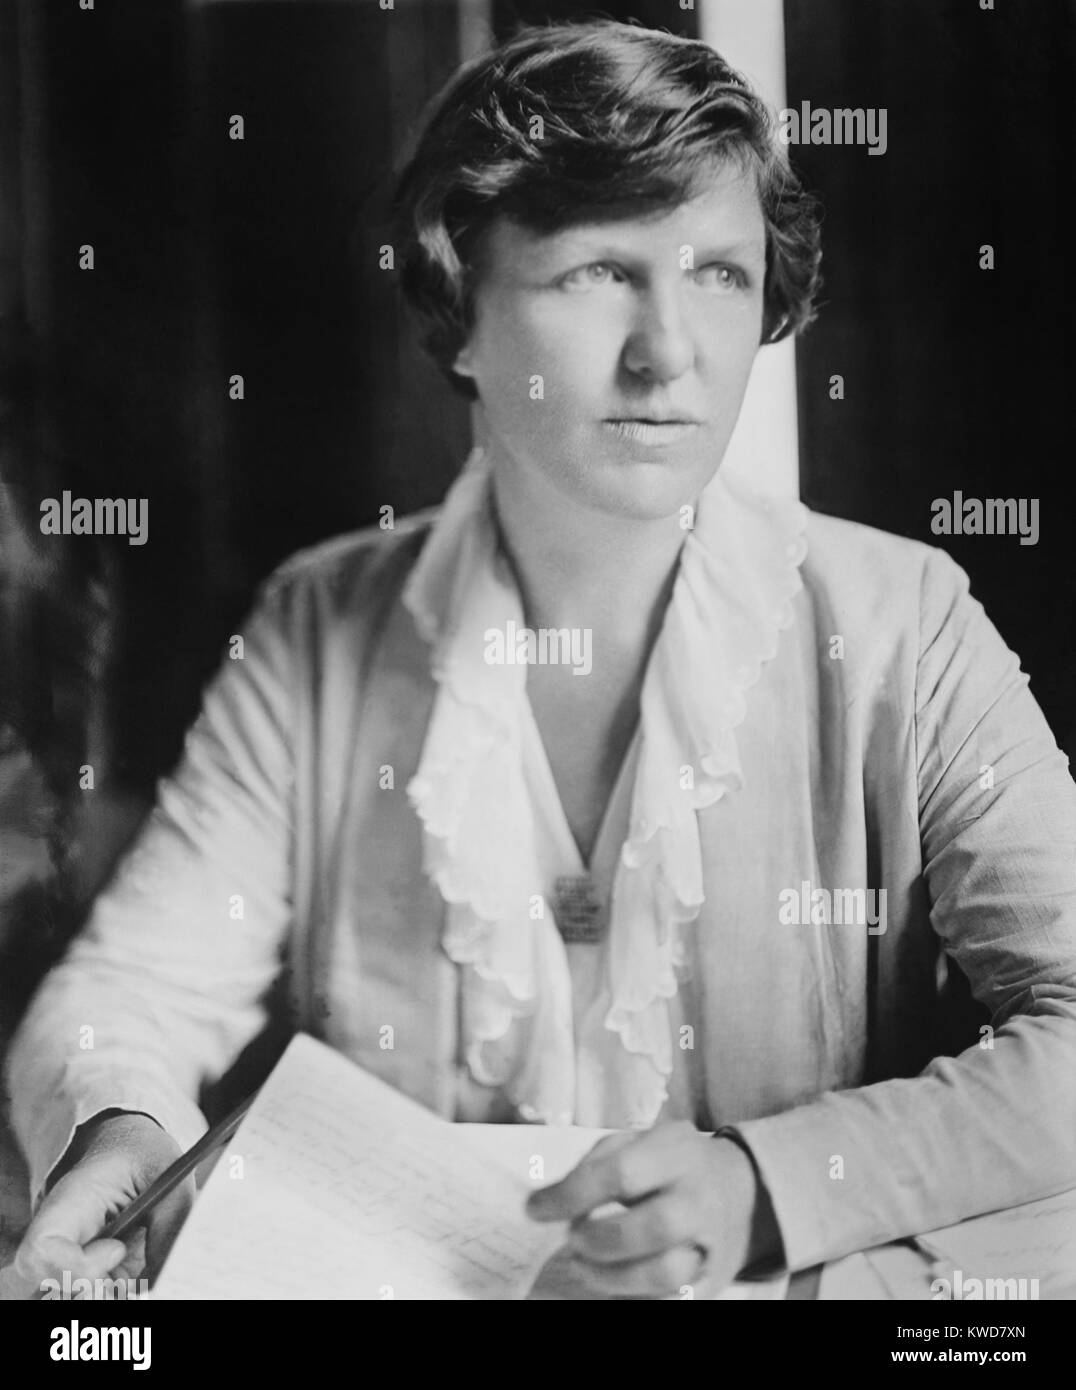 Elsie Hill, amerikanische feministische, Ca. 1920. Sie war ein aktiver suffragist von 1913 bis 1920, Planung großen Märsche und zweimal für Sprechen und Streikposten verhaftet. Nach 1920 war sie im Antrieb aktiv Der Nationalen Frauen Partei für eine gleichwertige Rechte Änderung für Frauen. (BSLOC 2015 16 202) Stockfoto